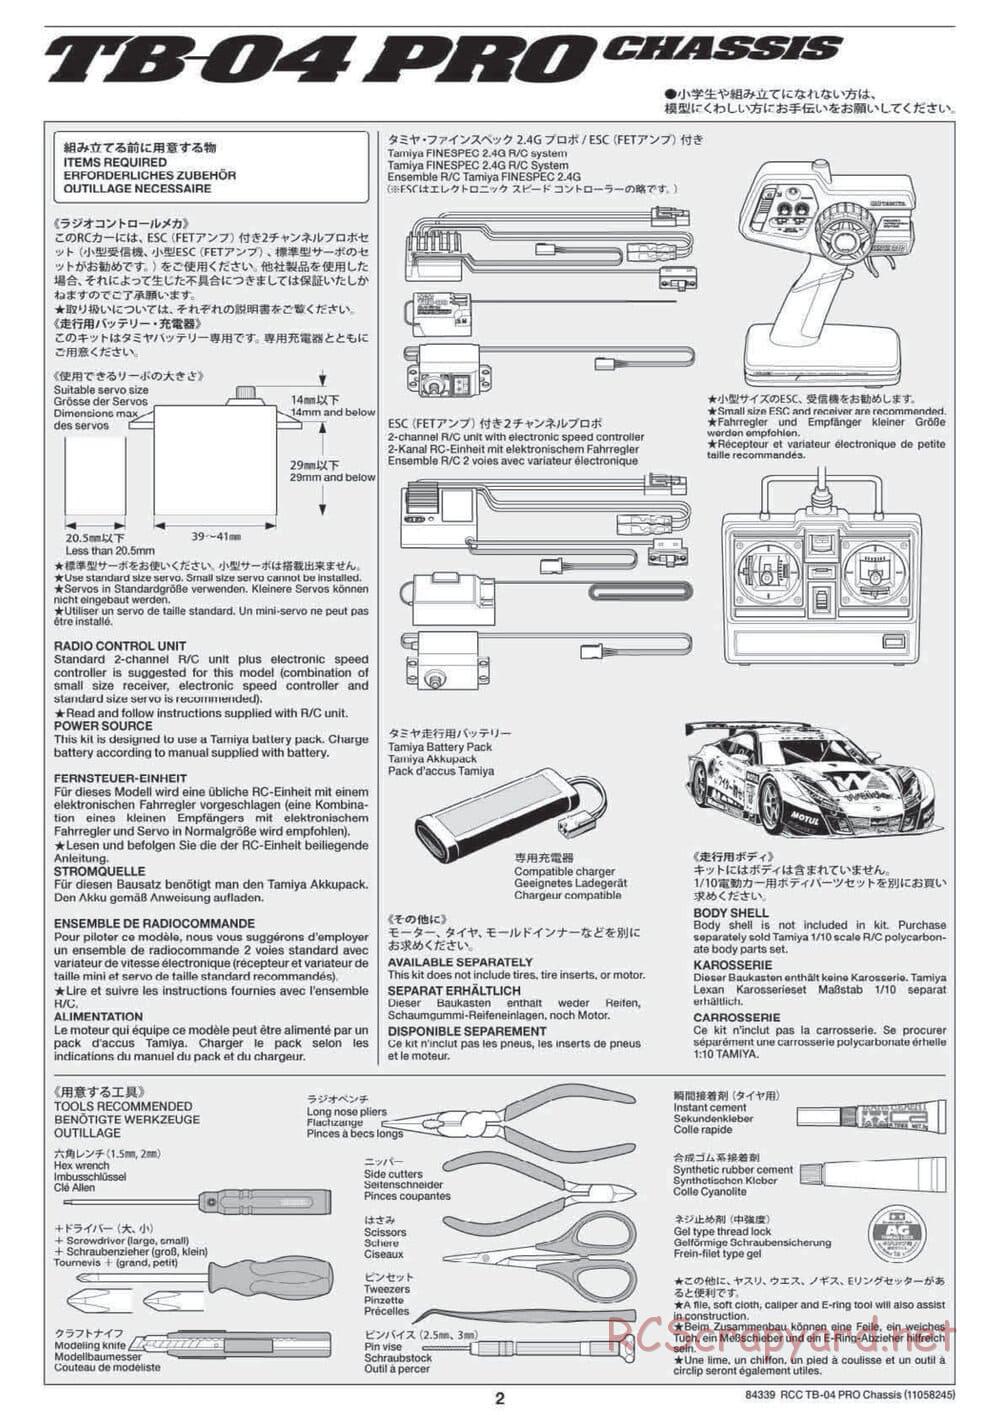 Tamiya - TB-04 Pro Chassis - Manual - Page 2